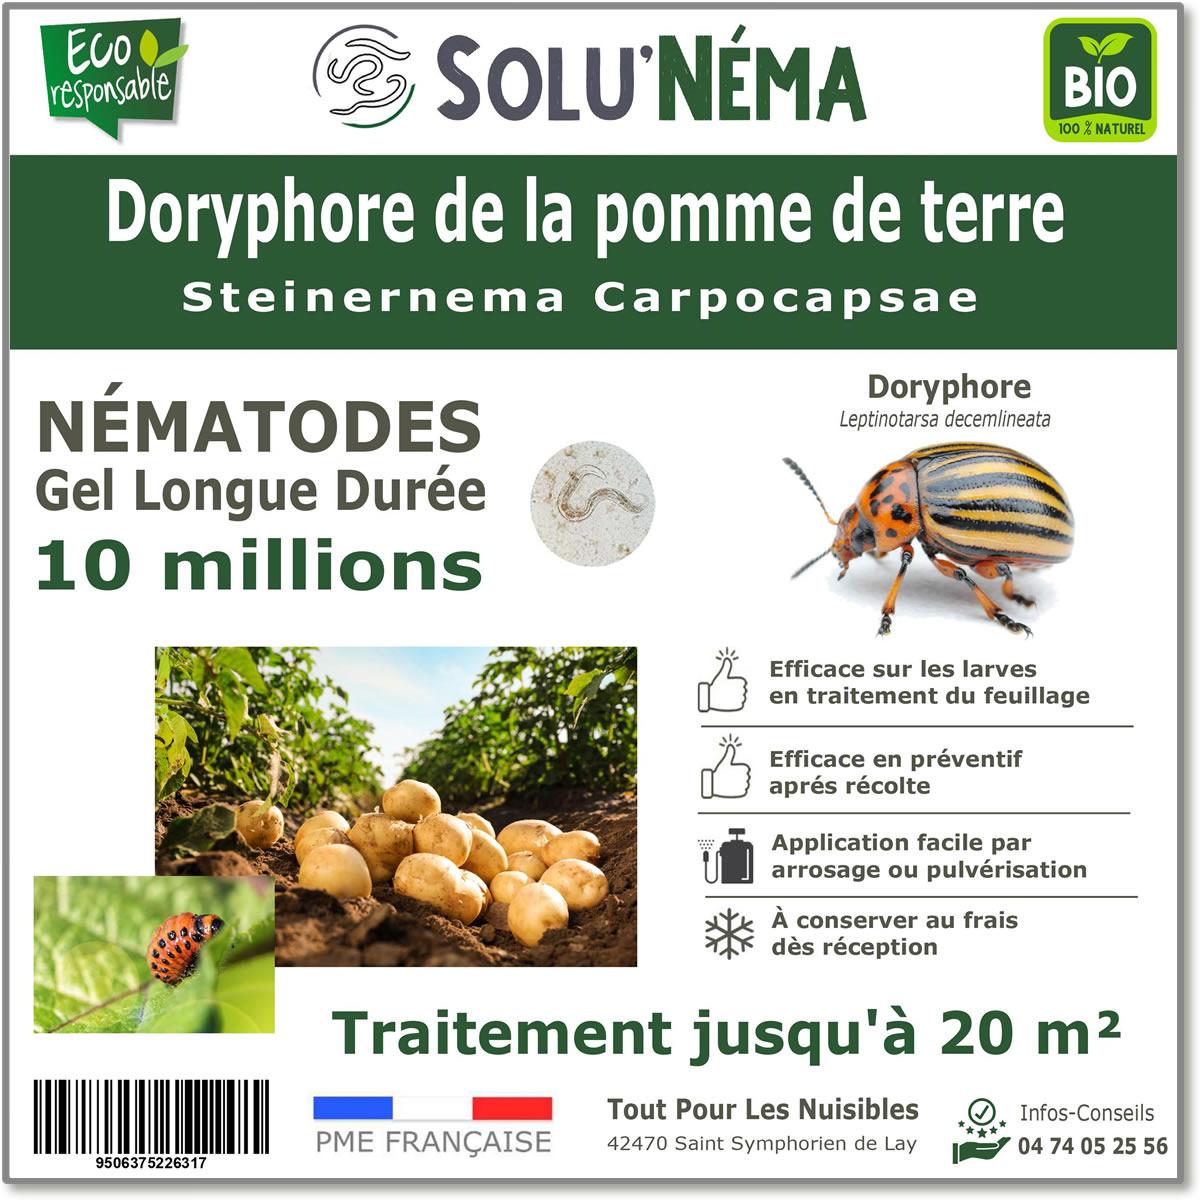 10 millions de nématodes pour traiter les larves de doryphore de la pomme de terre